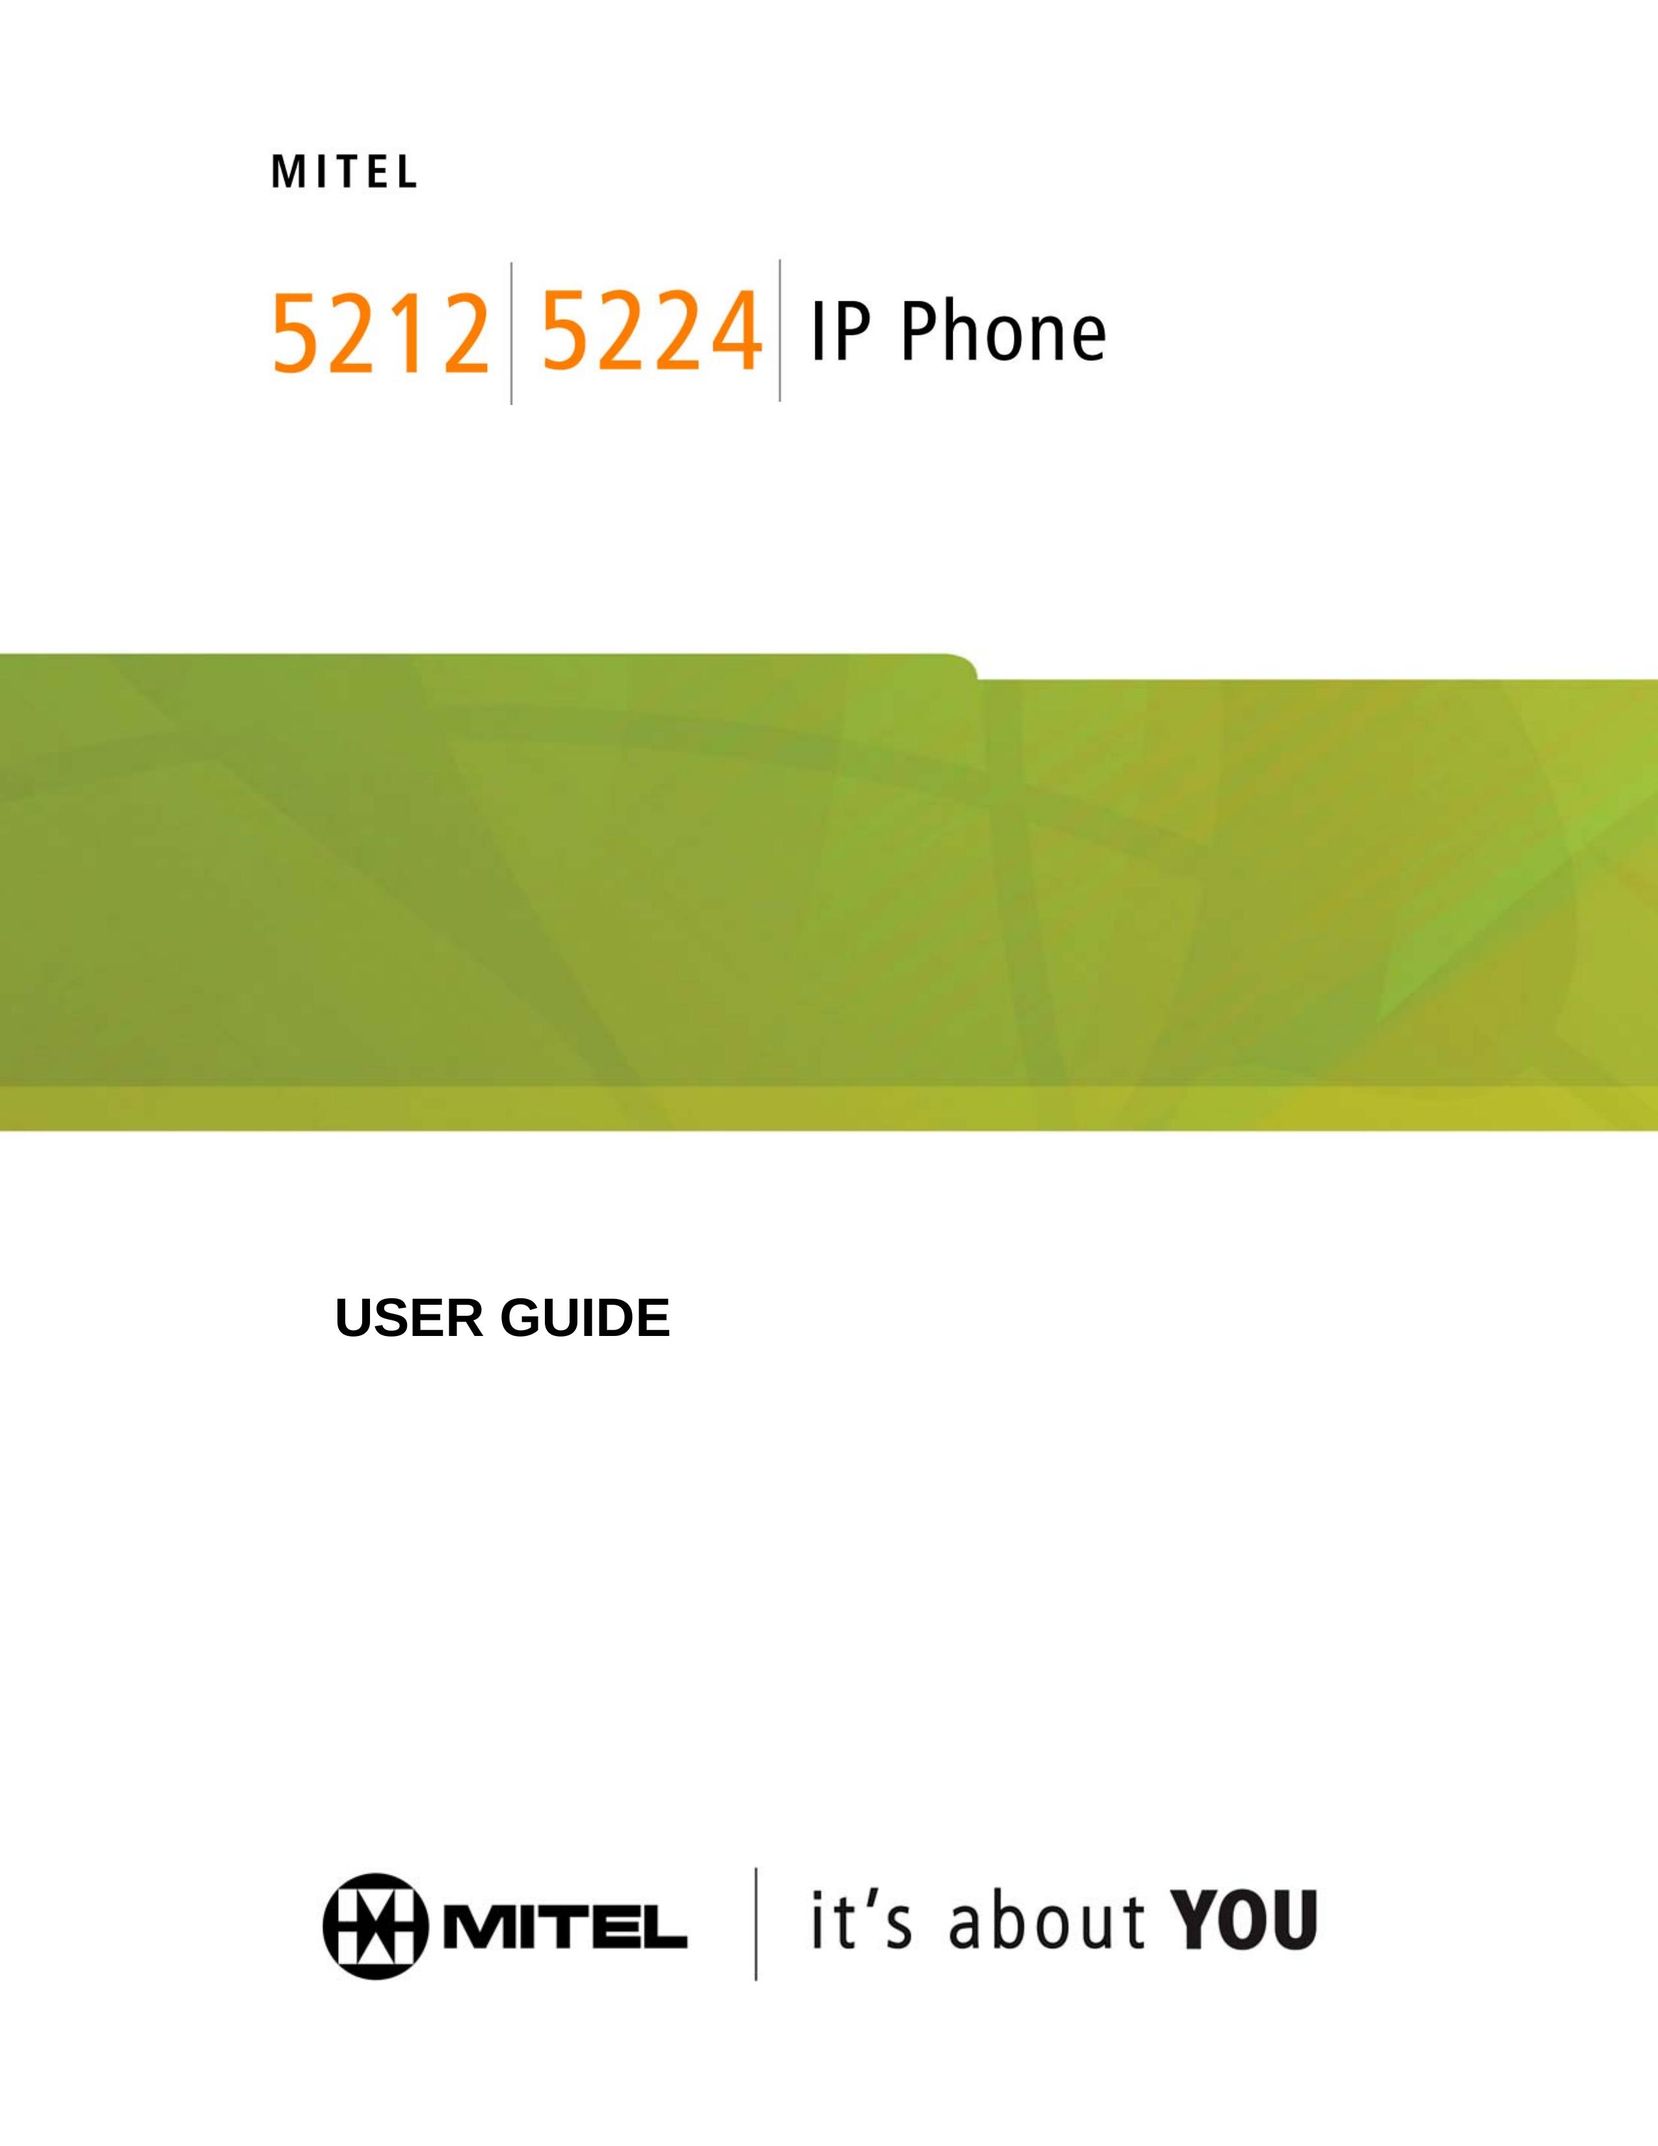 NEC 5224 IP Phone User Manual